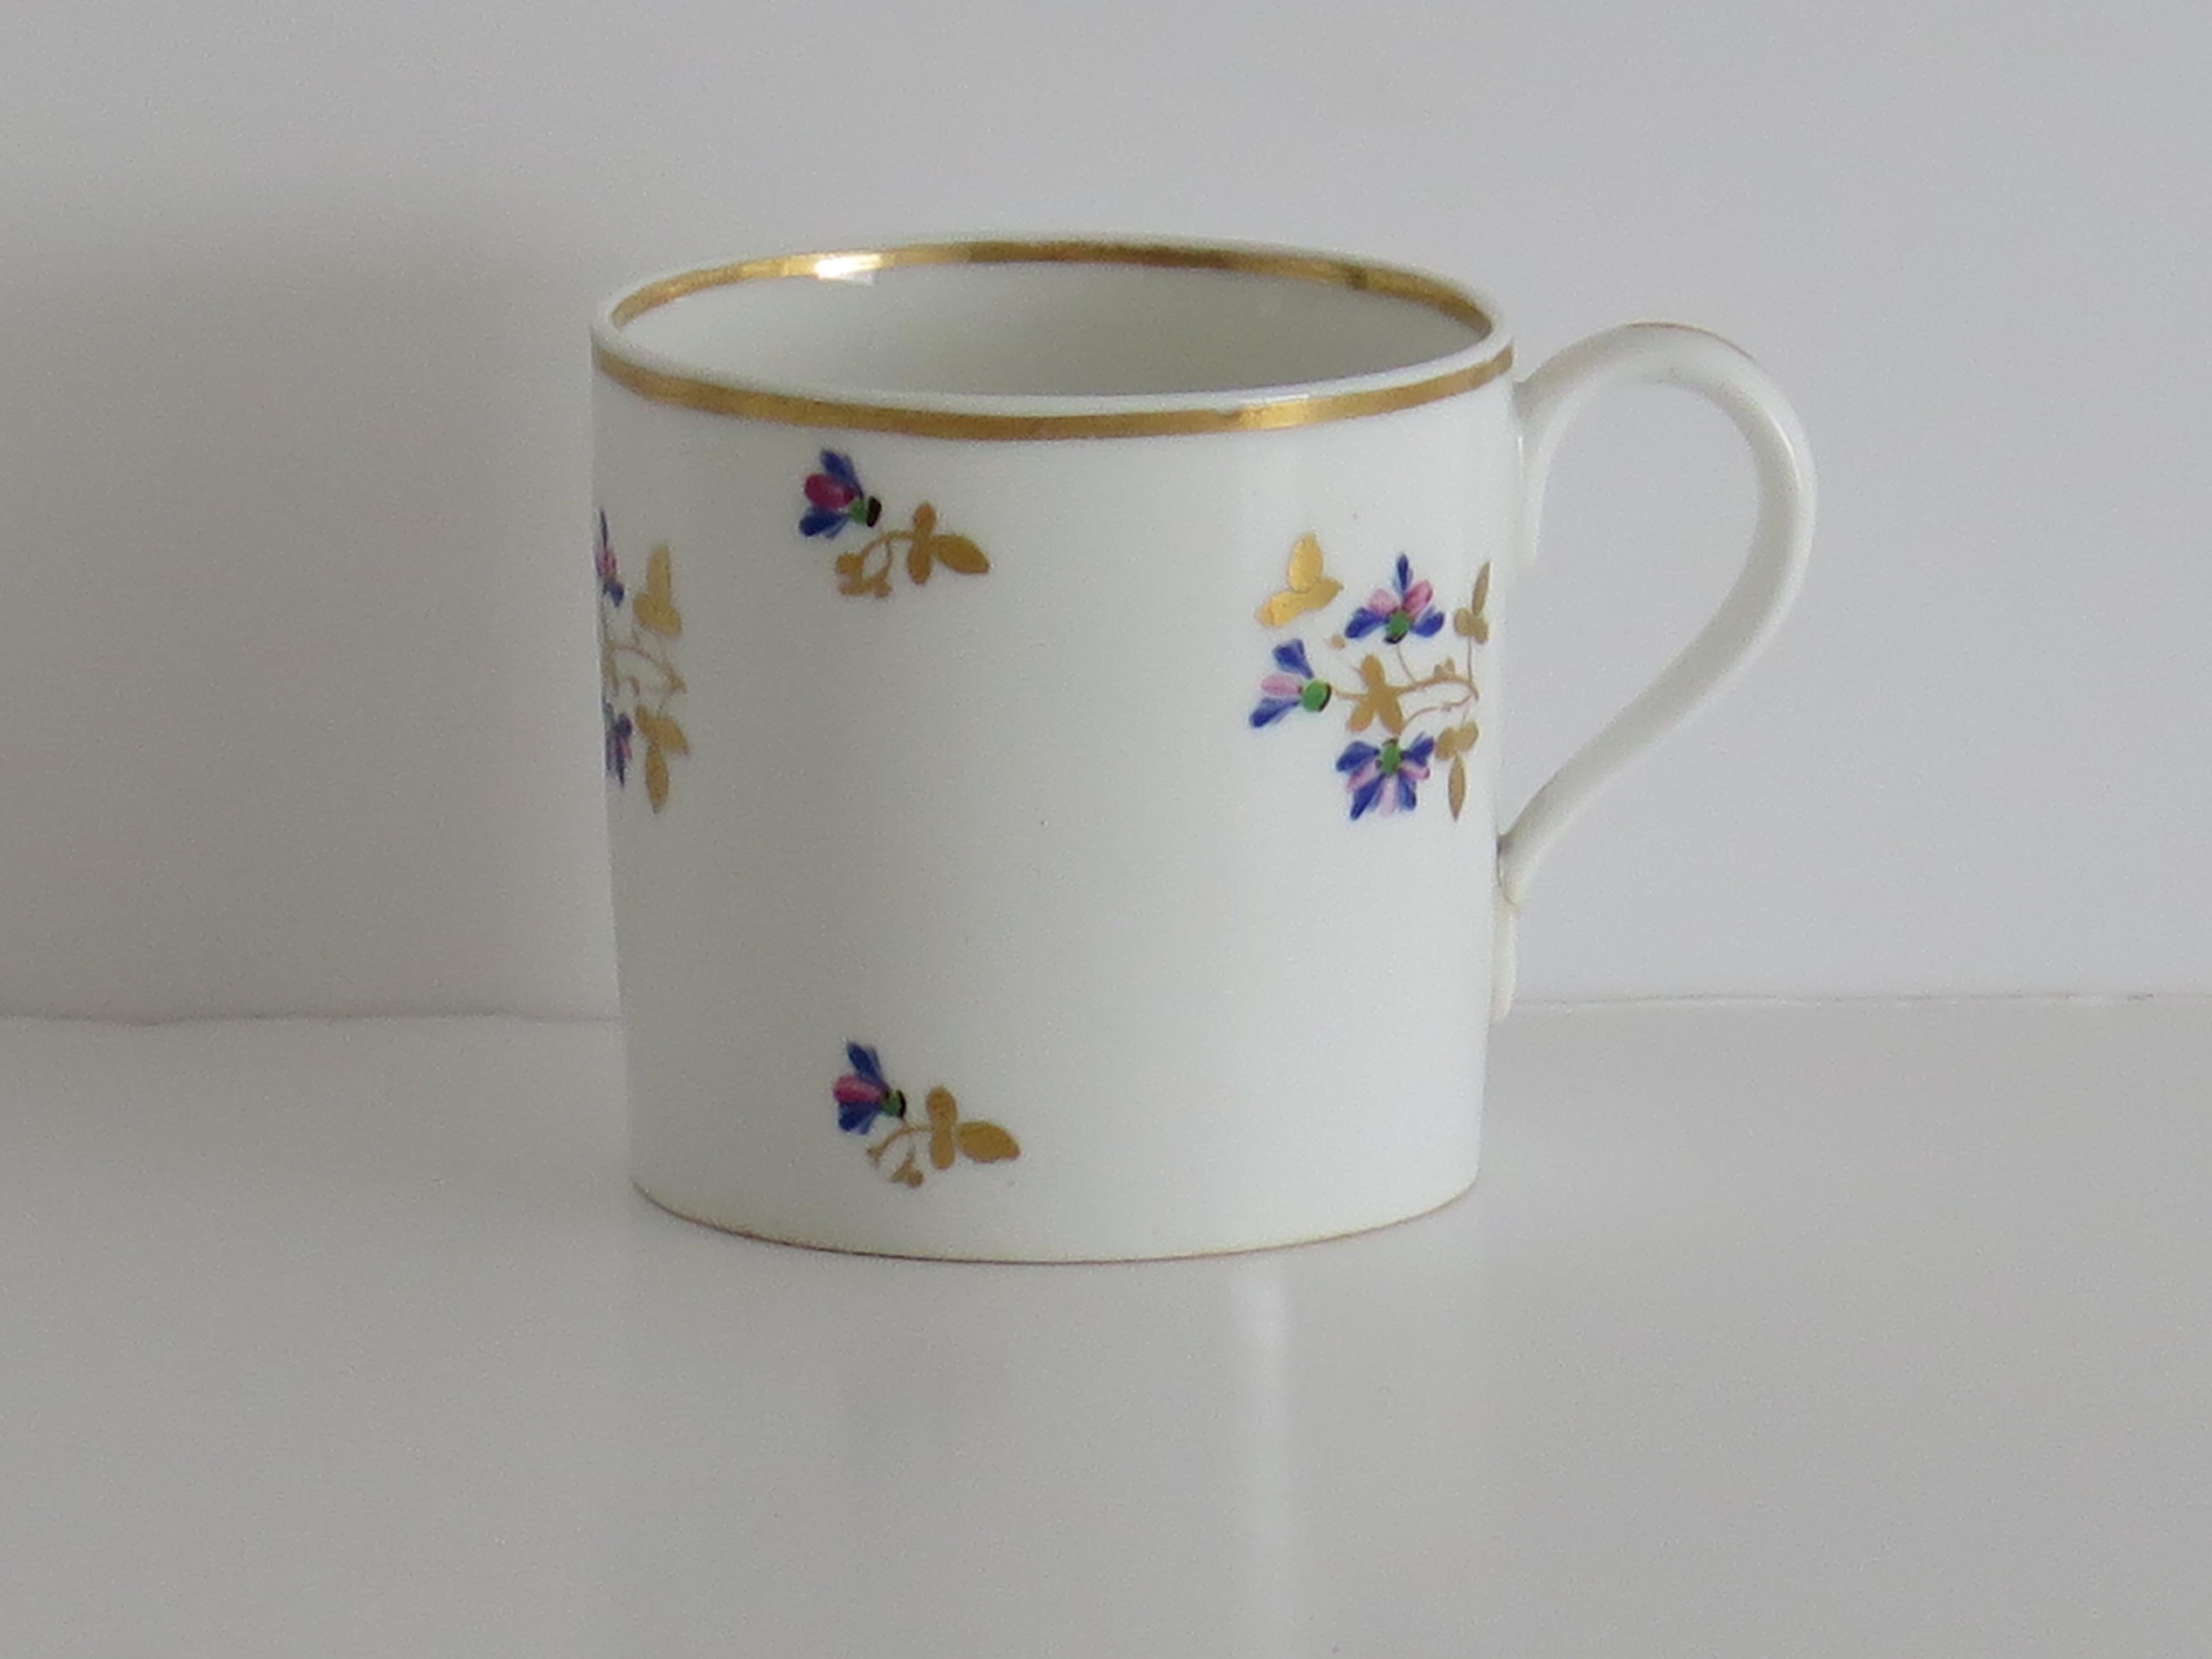 Il s'agit d'une bonne boîte à café ou tasse en porcelaine peinte à la main et dorée selon le motif 129, fabriquée par la manufacture de Derby, sous le règne de George 111 au début du XIXe siècle, vers 1810.

Il est nominalement à faces droites avec